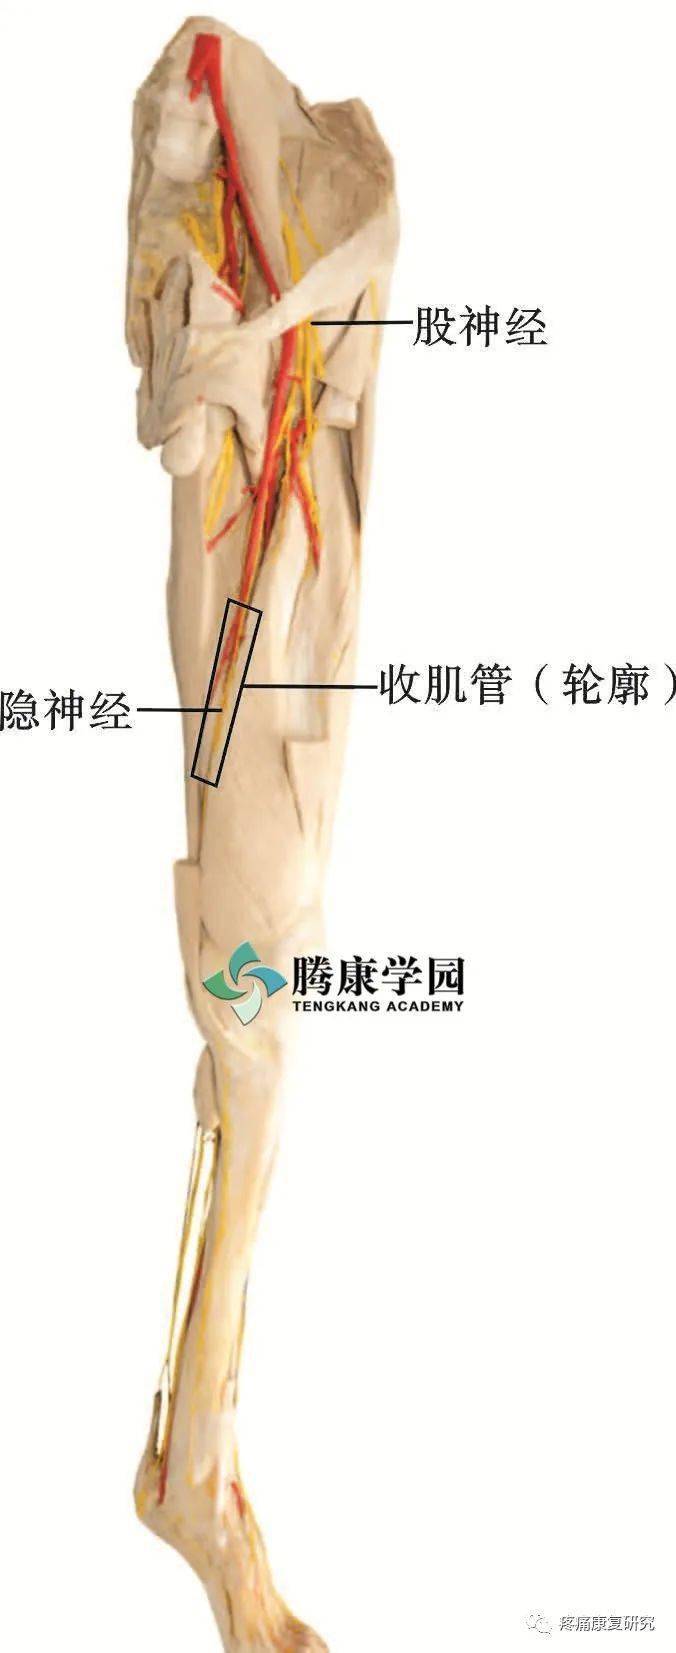 评估触诊检查:首先定位股前内侧中1/3段,通过缝匠肌按压深面的收肌管